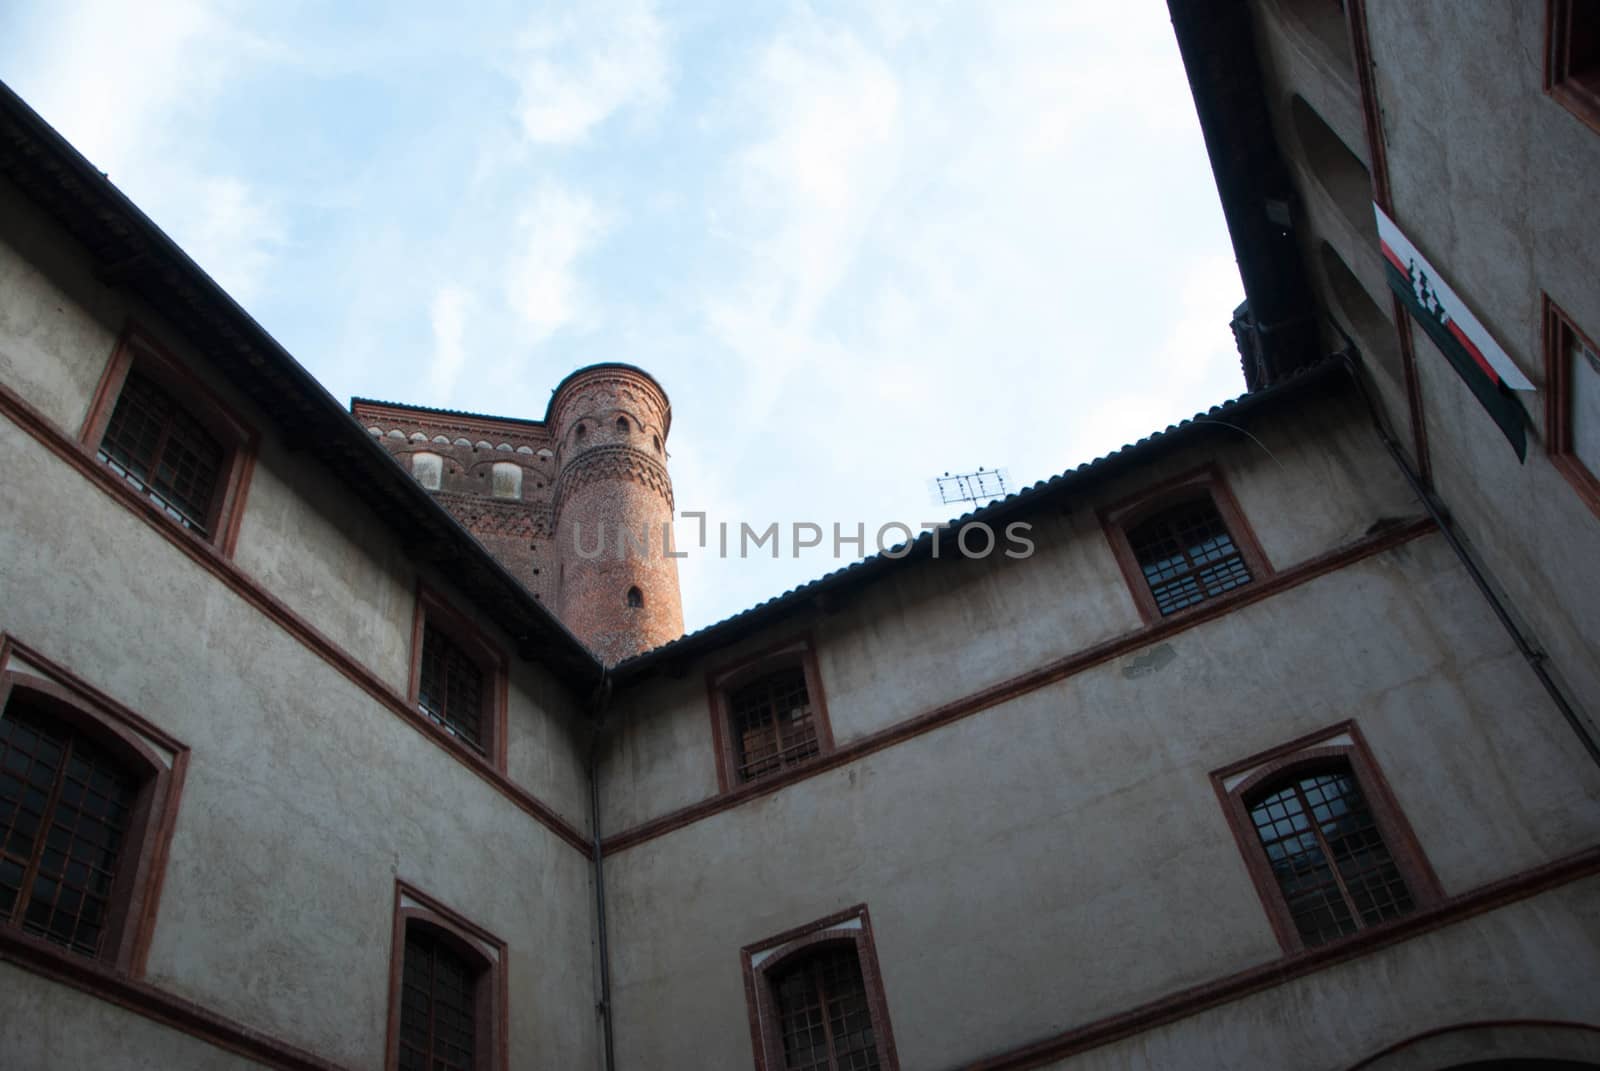 Castle Principles of Acaja, Fossano, Piedmont - Italy by cosca